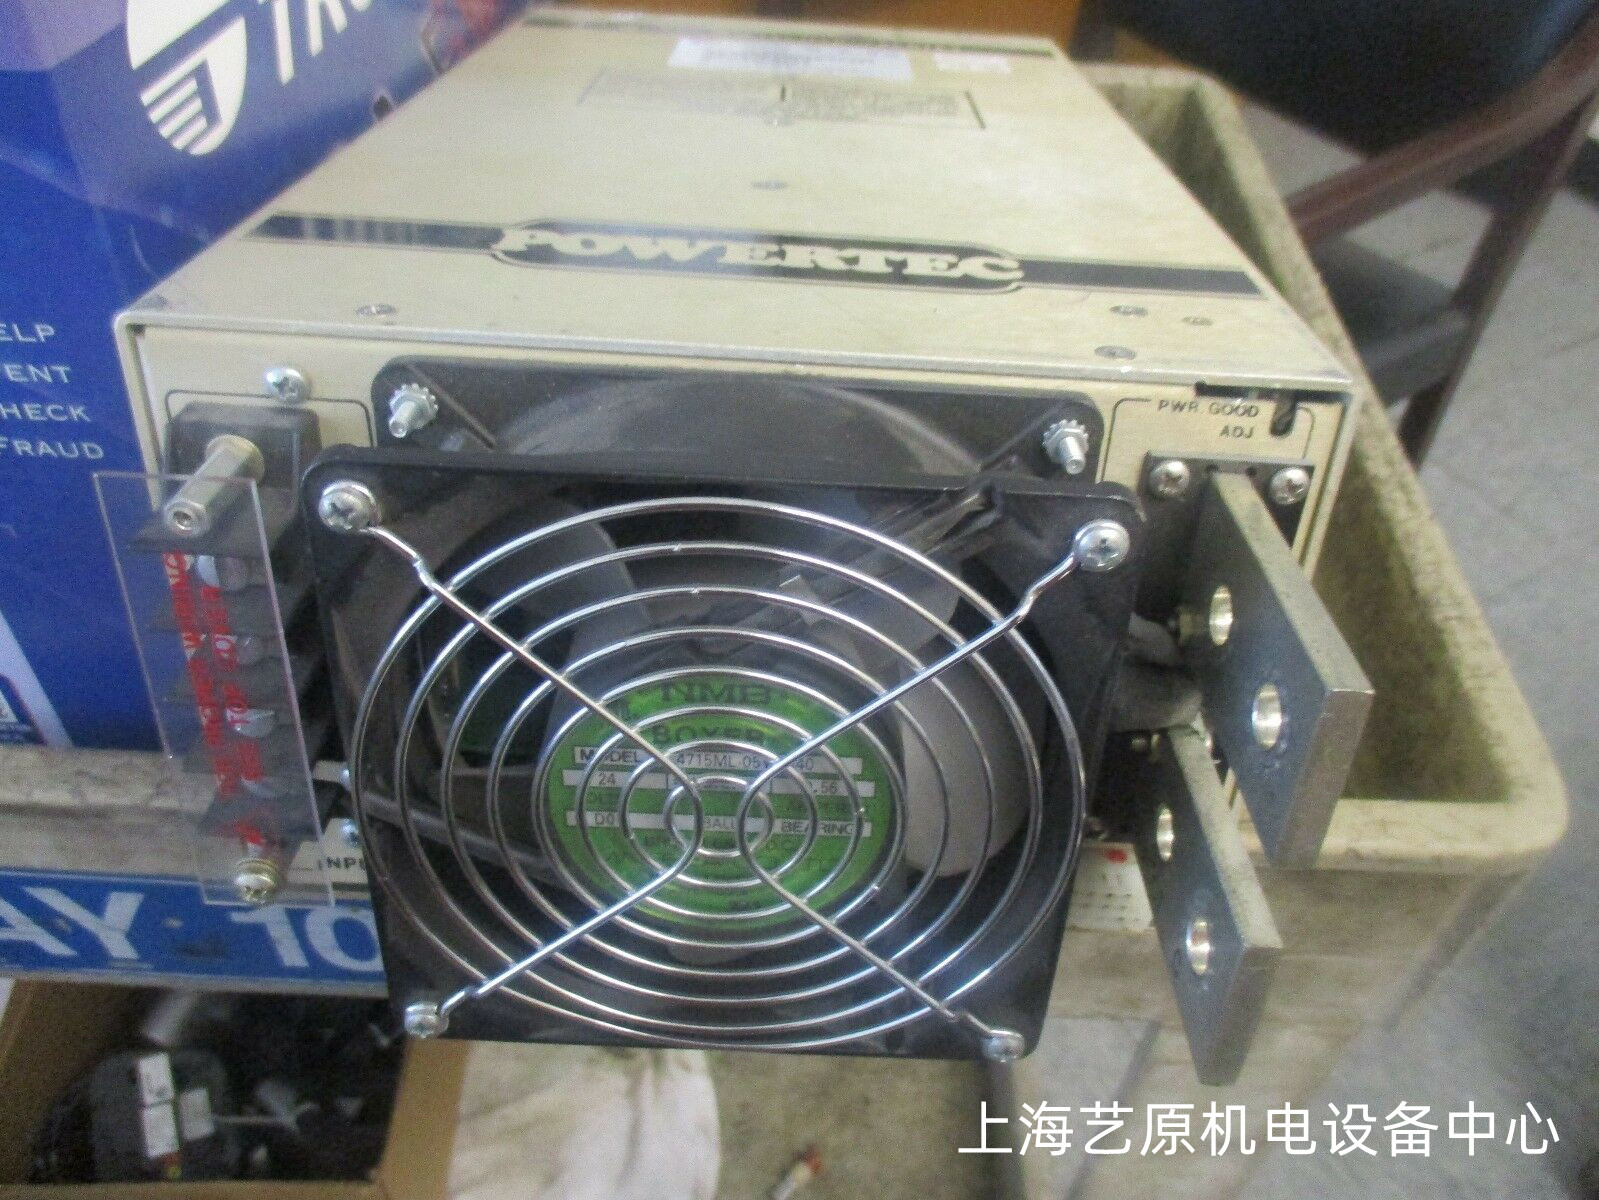 广州半导体电源维修公司 9R5-600-381-EF-3 维修